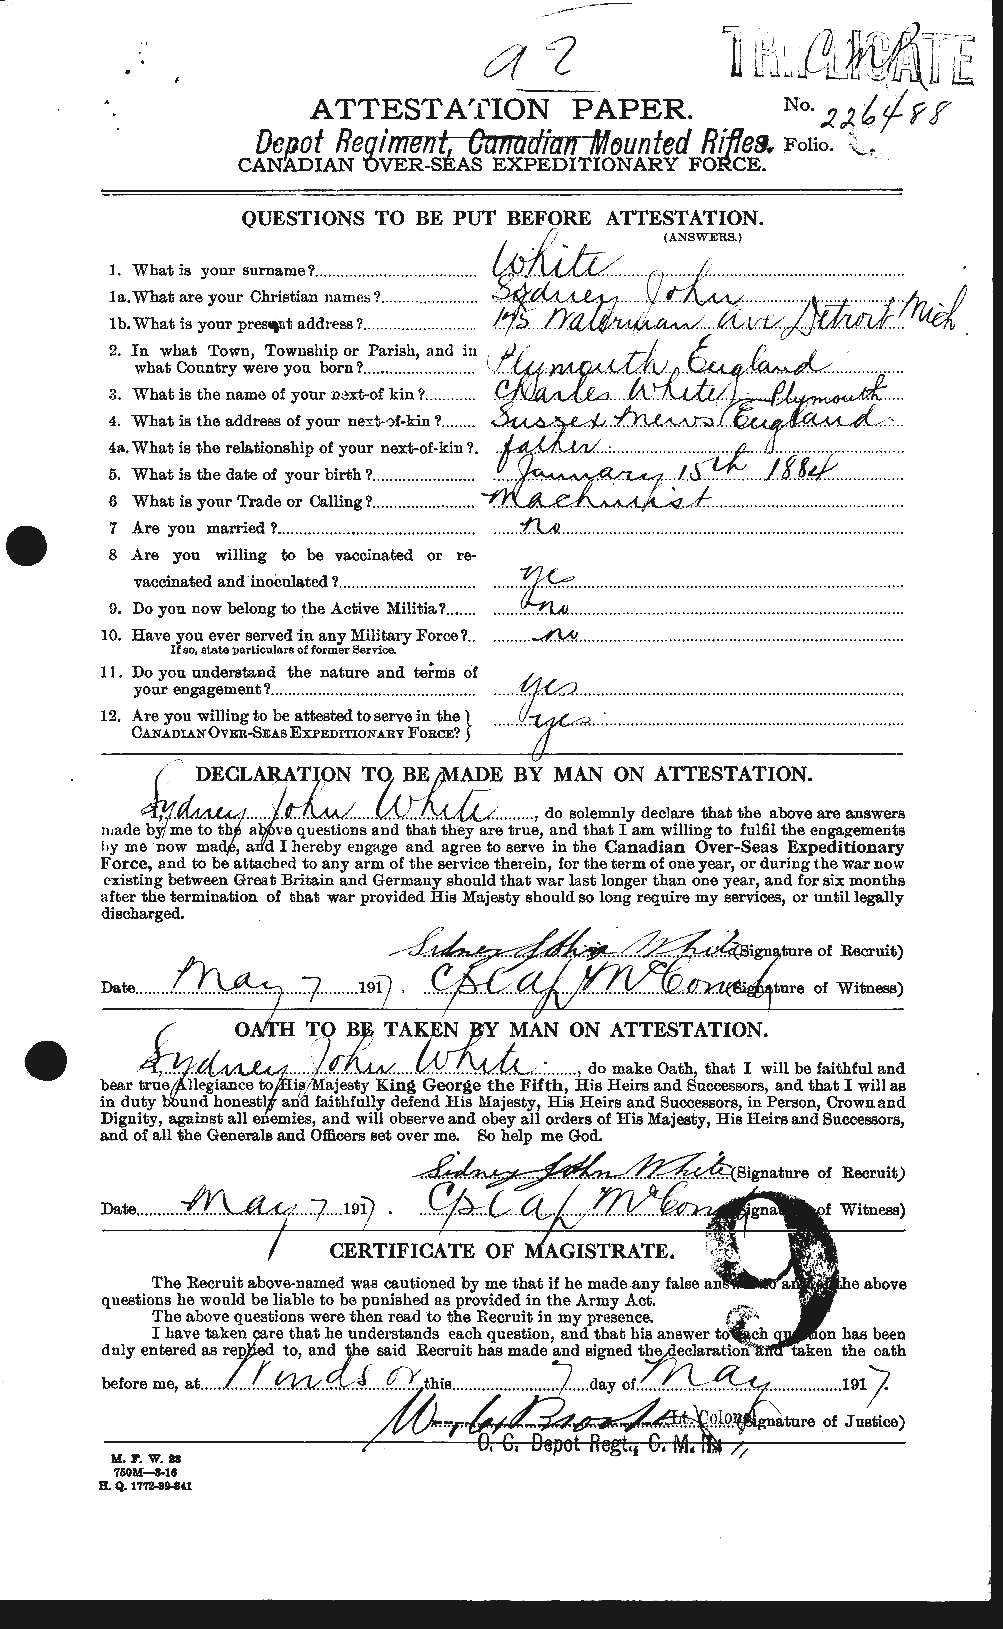 Dossiers du Personnel de la Première Guerre mondiale - CEC 673540a